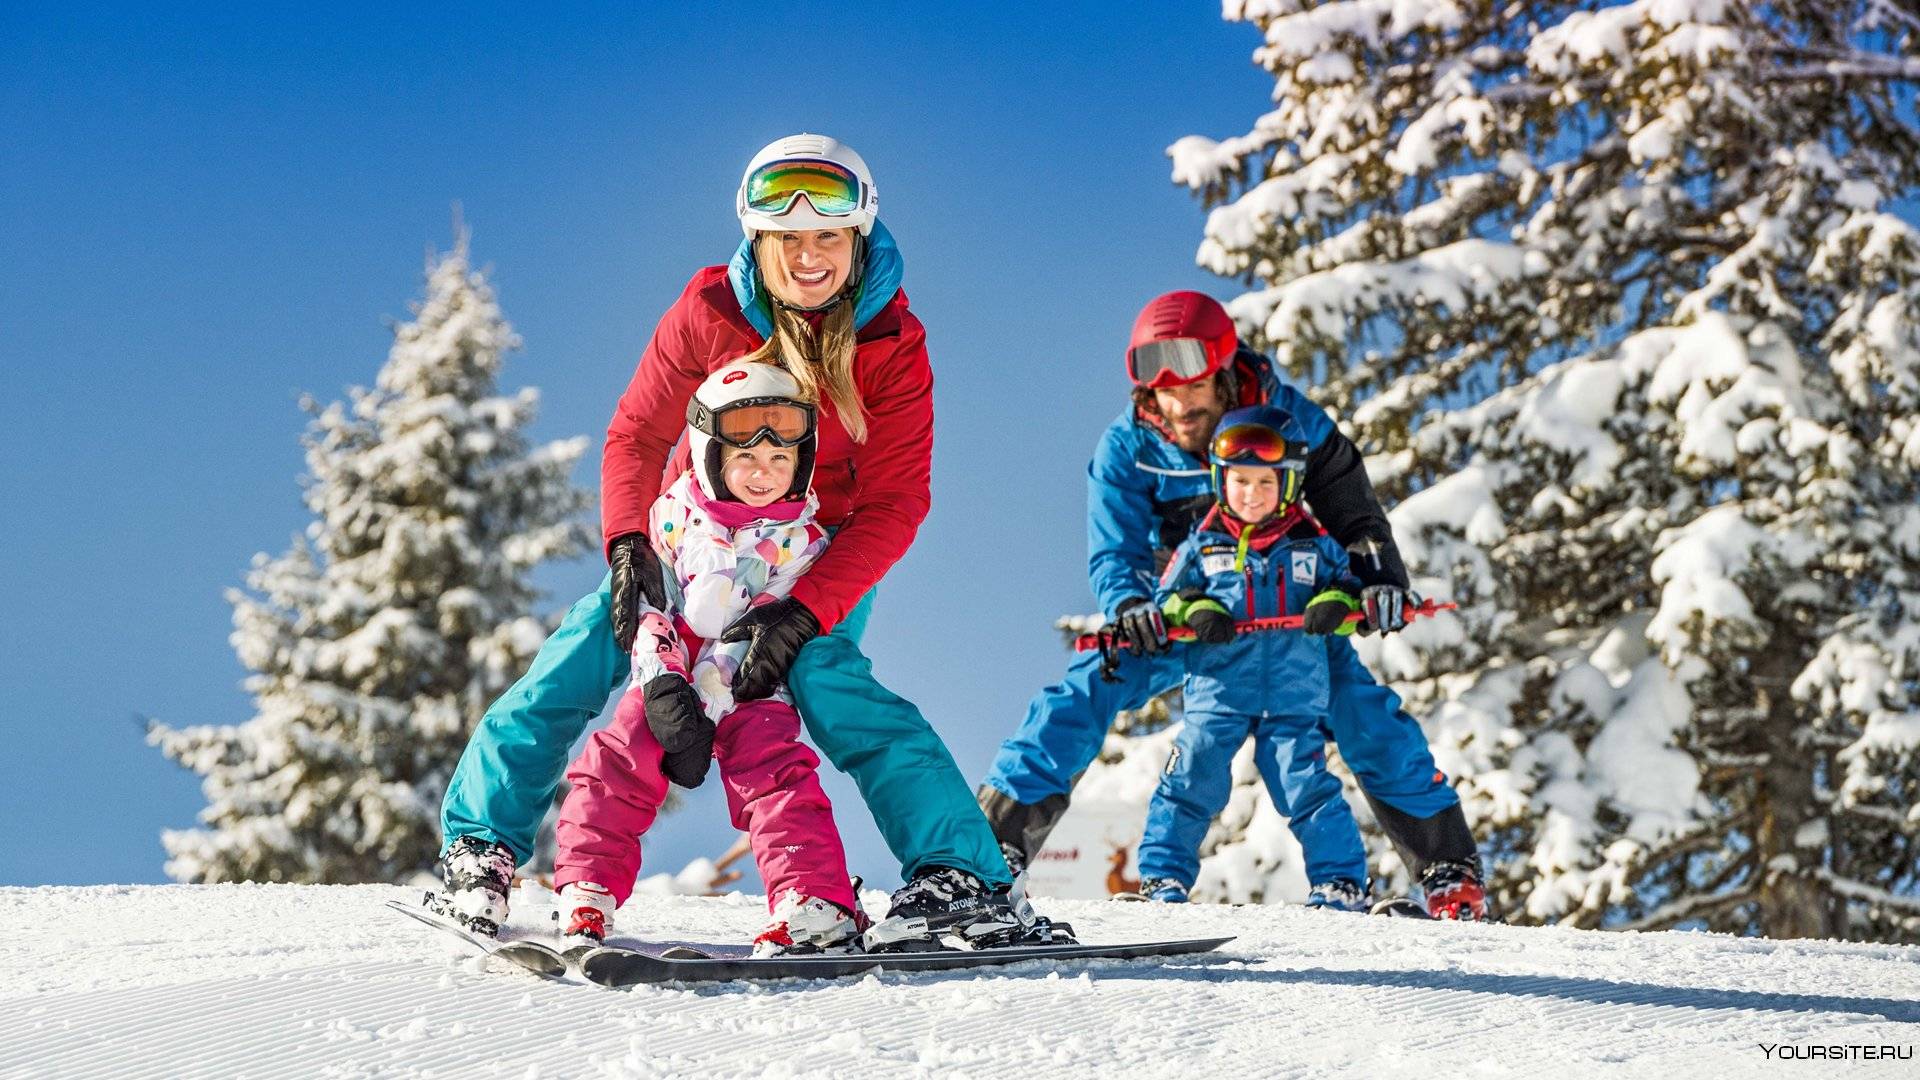 Катание на горнолыжном курорте. Спортивная семья зимой. Катание на горных лыжах. Дети на горнолыжном курорте. Семья с детьми на лыжах.